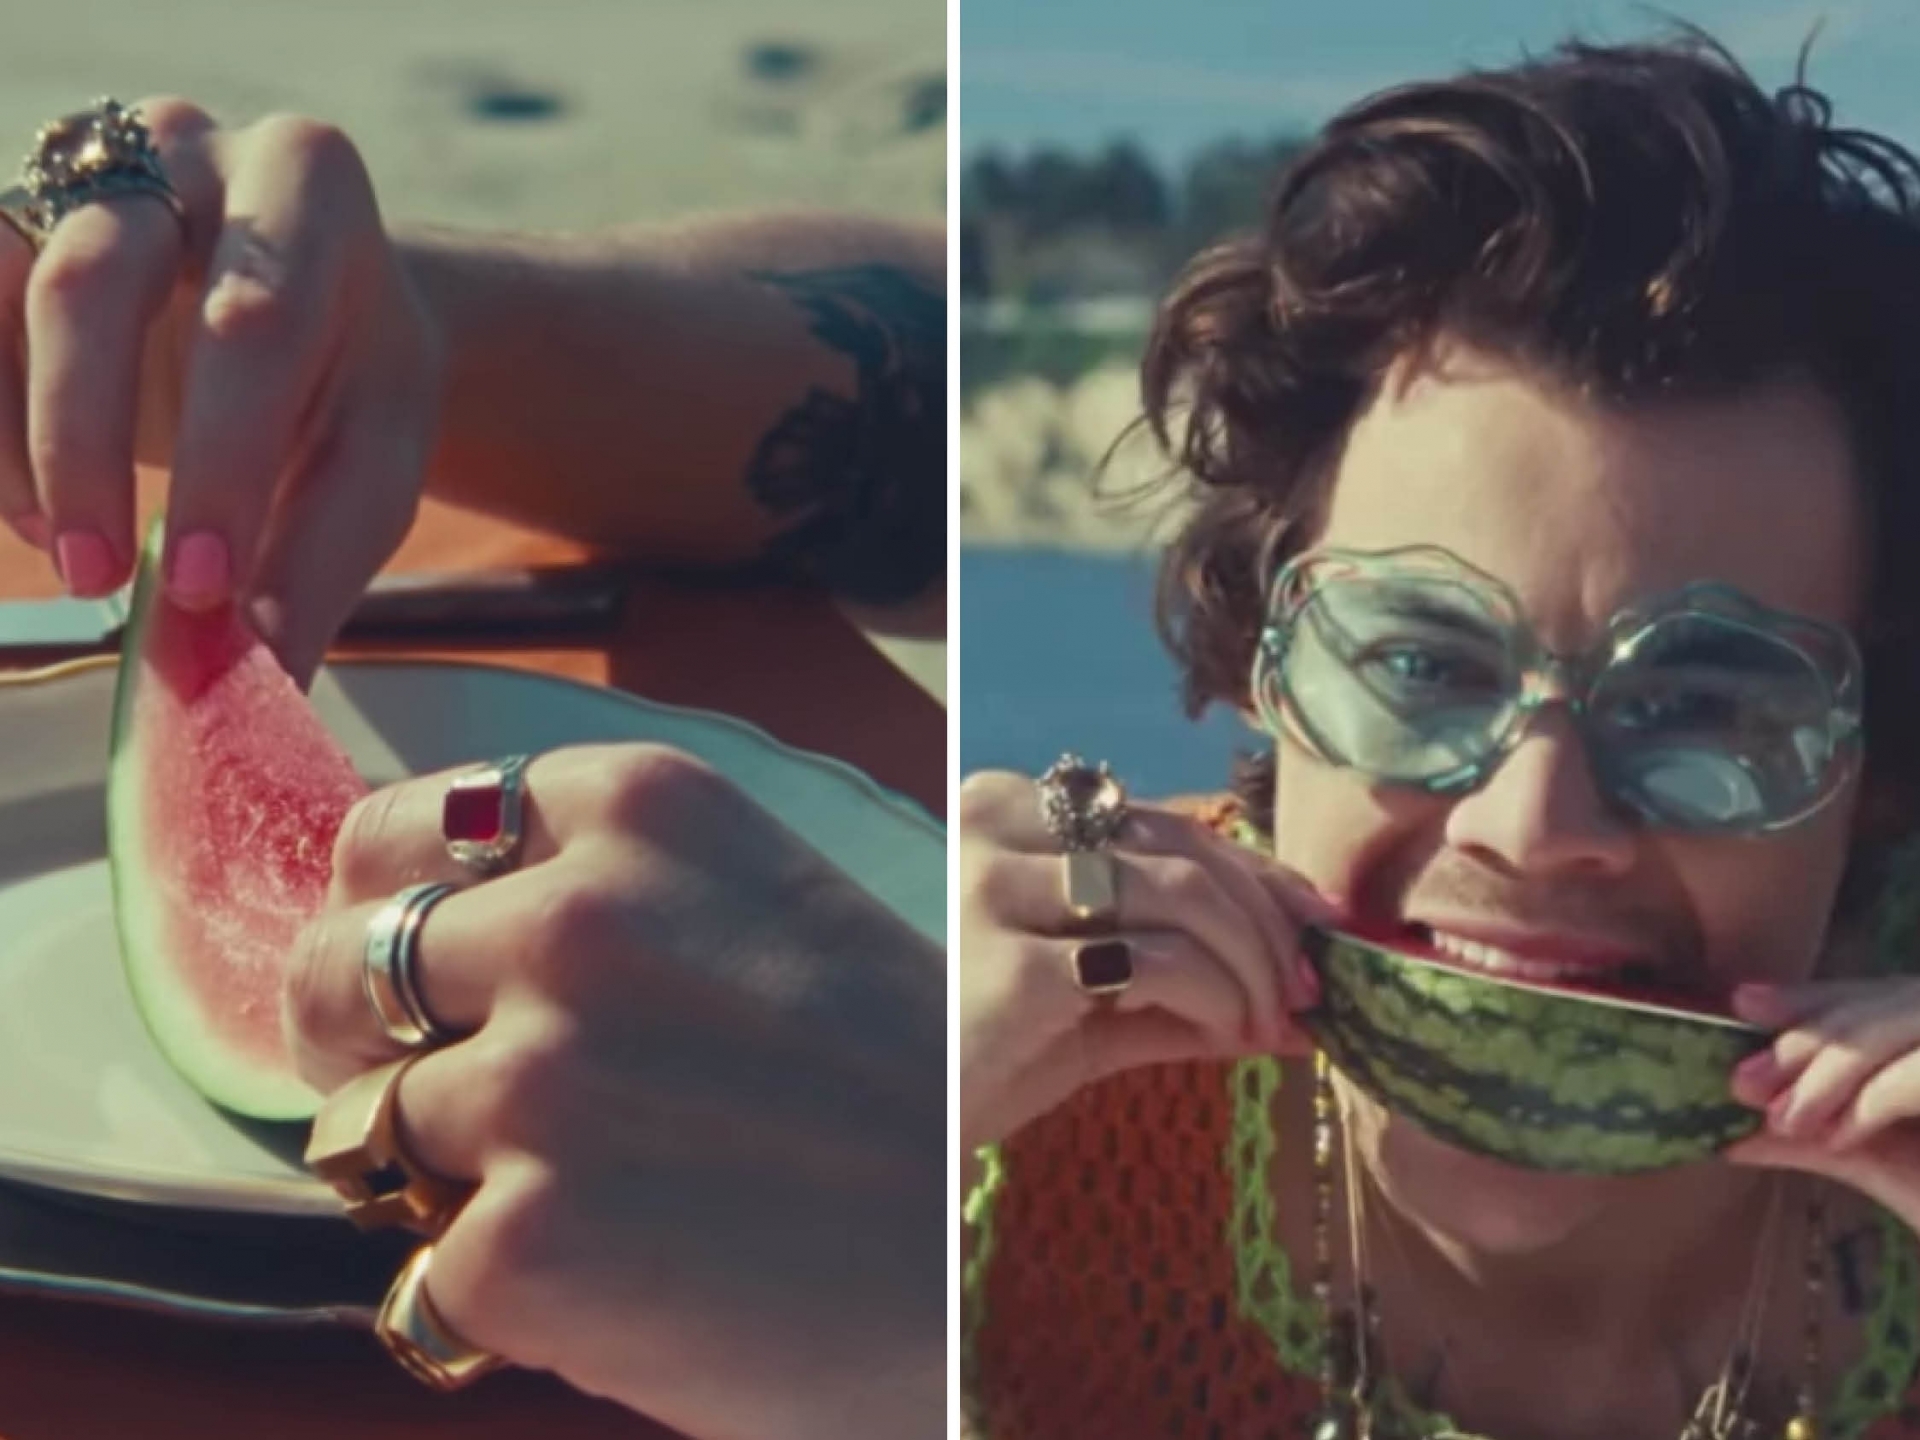 Trong MV Watermelon Sugar, Harry Styles sơn móng tay hồng cánh sen mộng mơ lãng mạn. Hồng cánh sen lên môi có thể không chấp nhận được nhưng sơn móng tay thì cũng rất gì và này nọ, nhất là trong bối cảnh xanh đỏ của MV.